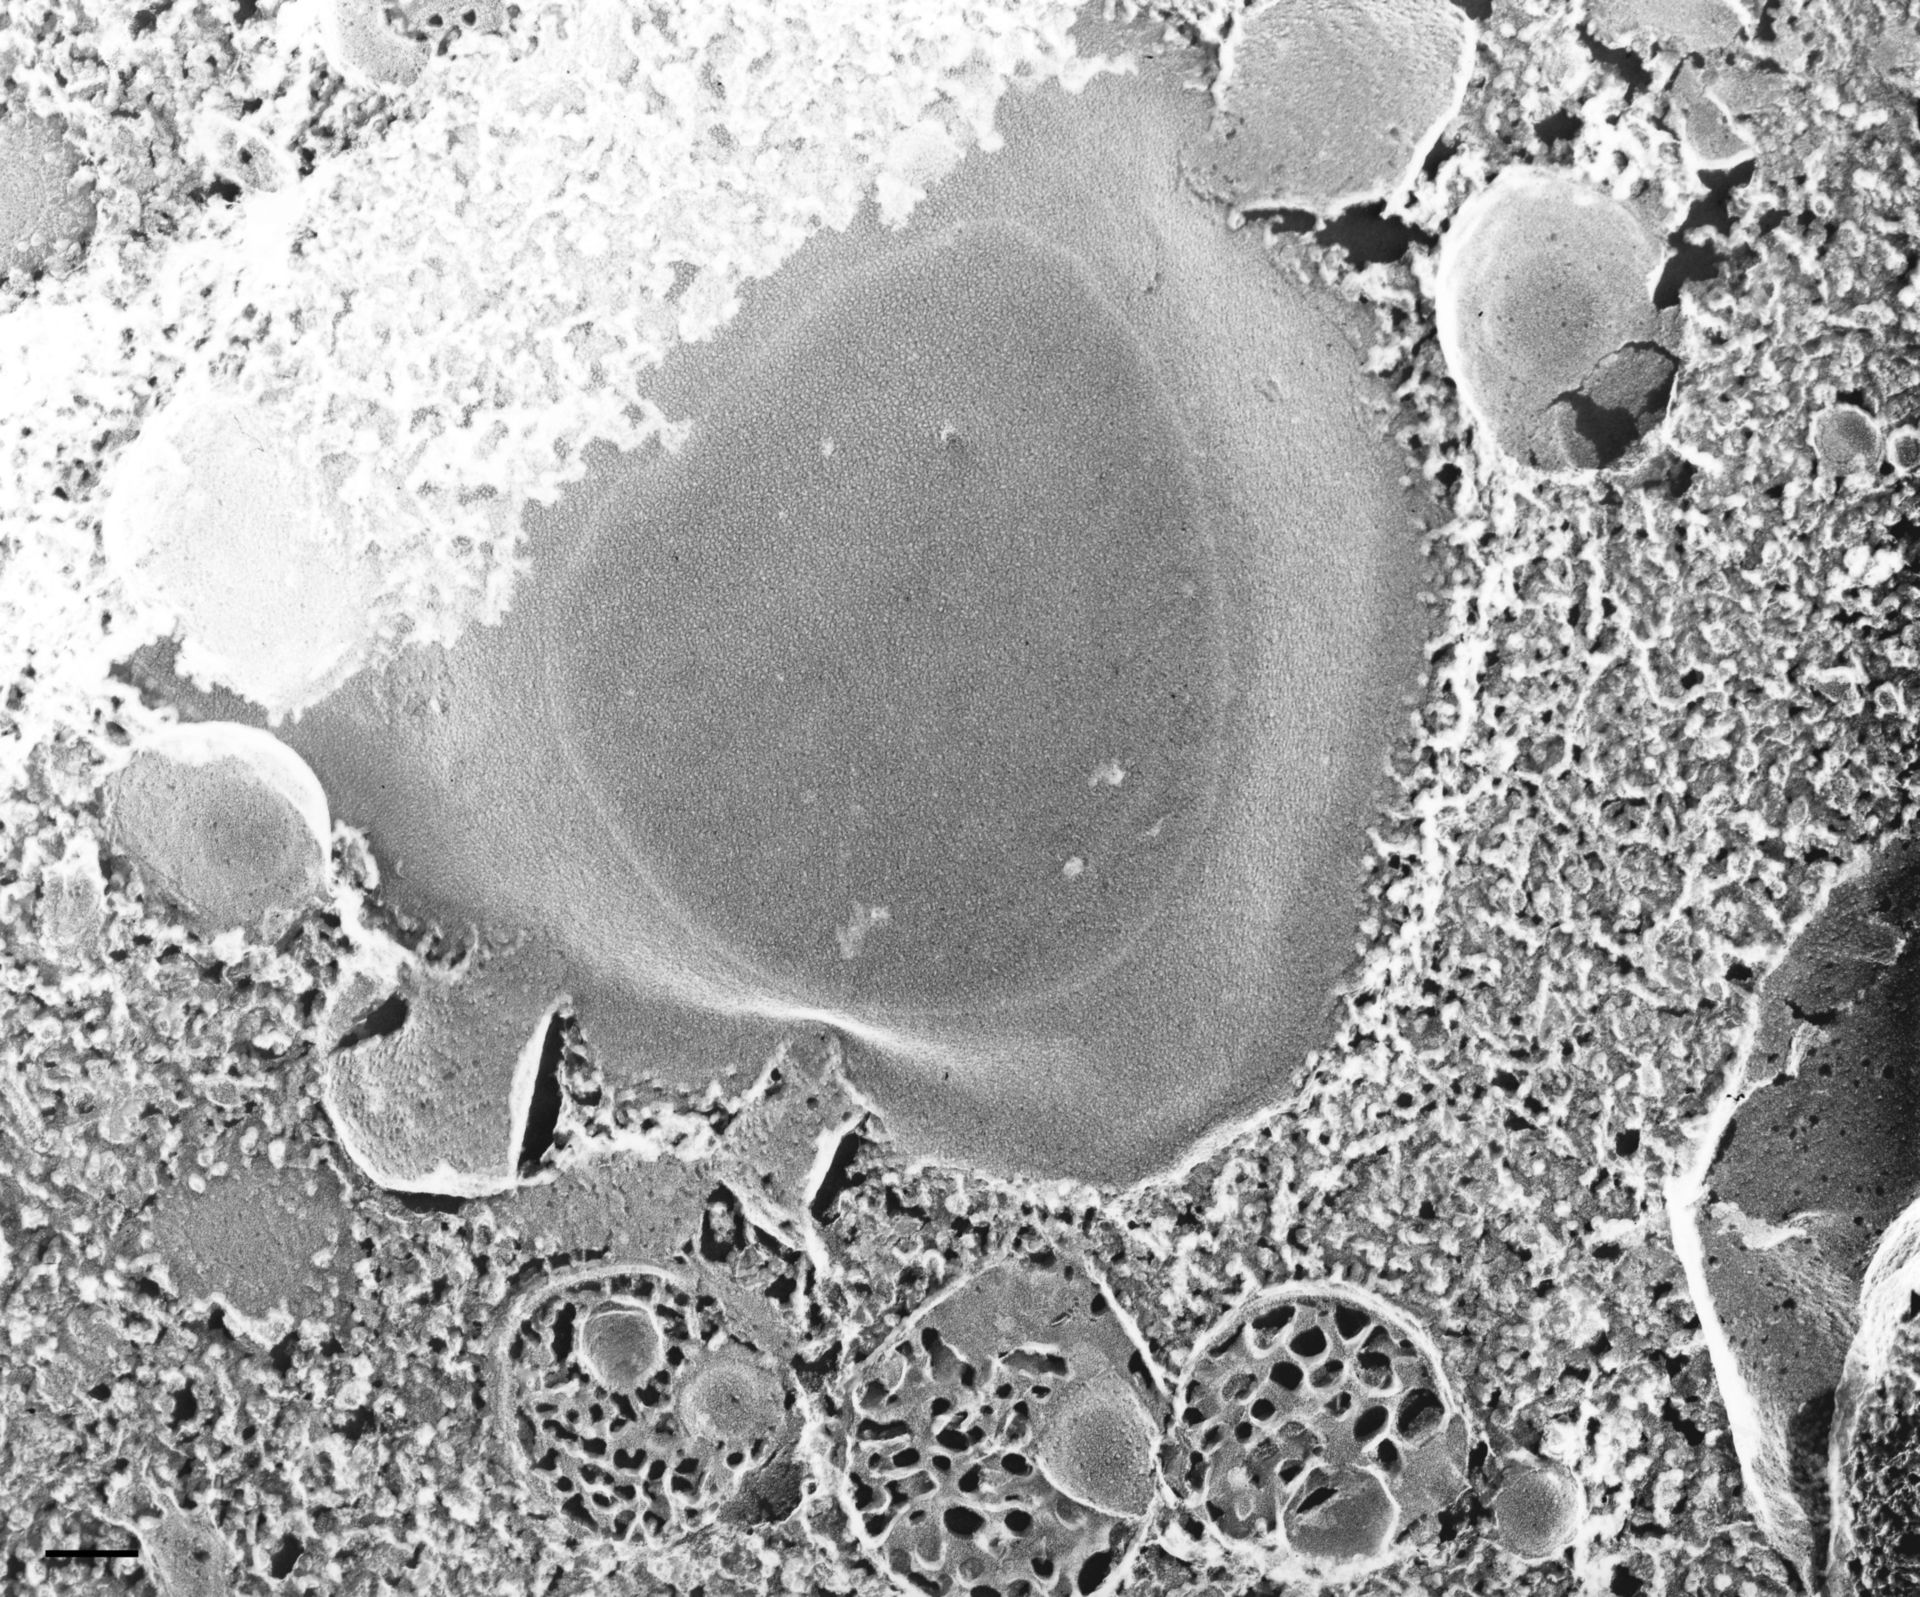 Paramecium multimicronucleatum (membrana vescicola) - CIL:36719